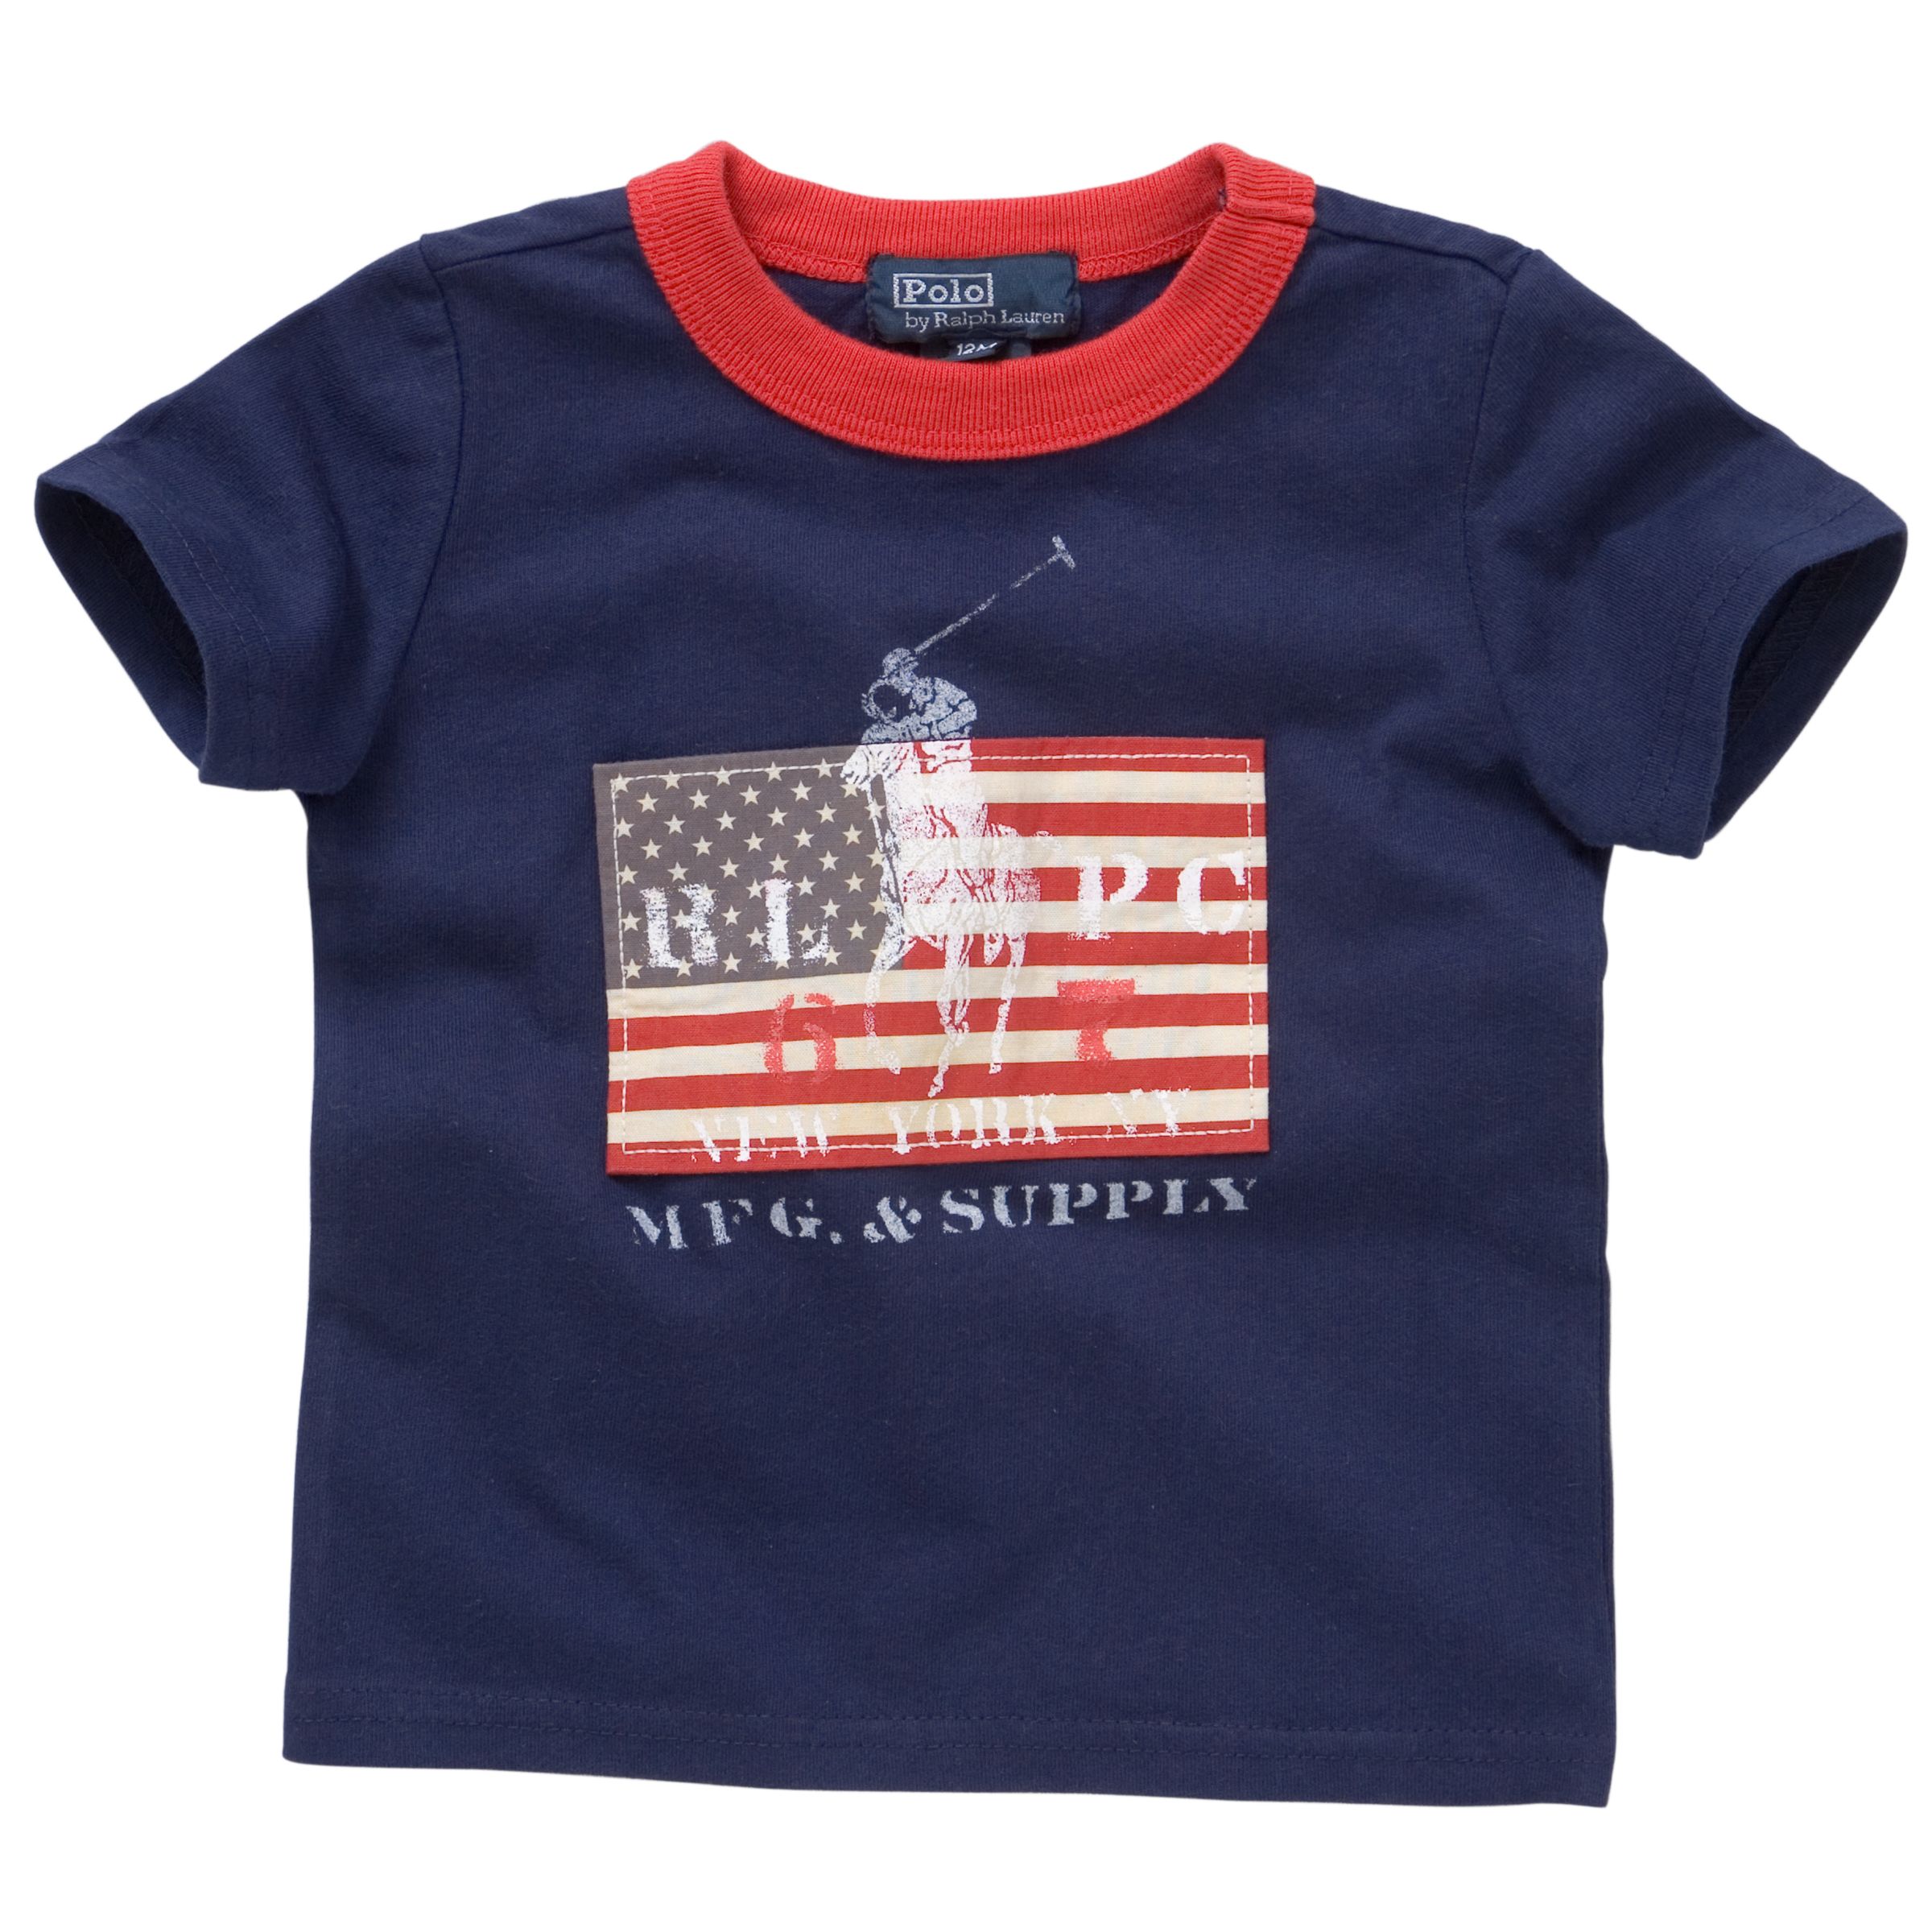 USA Ringer T-Shirt, Navy Blue